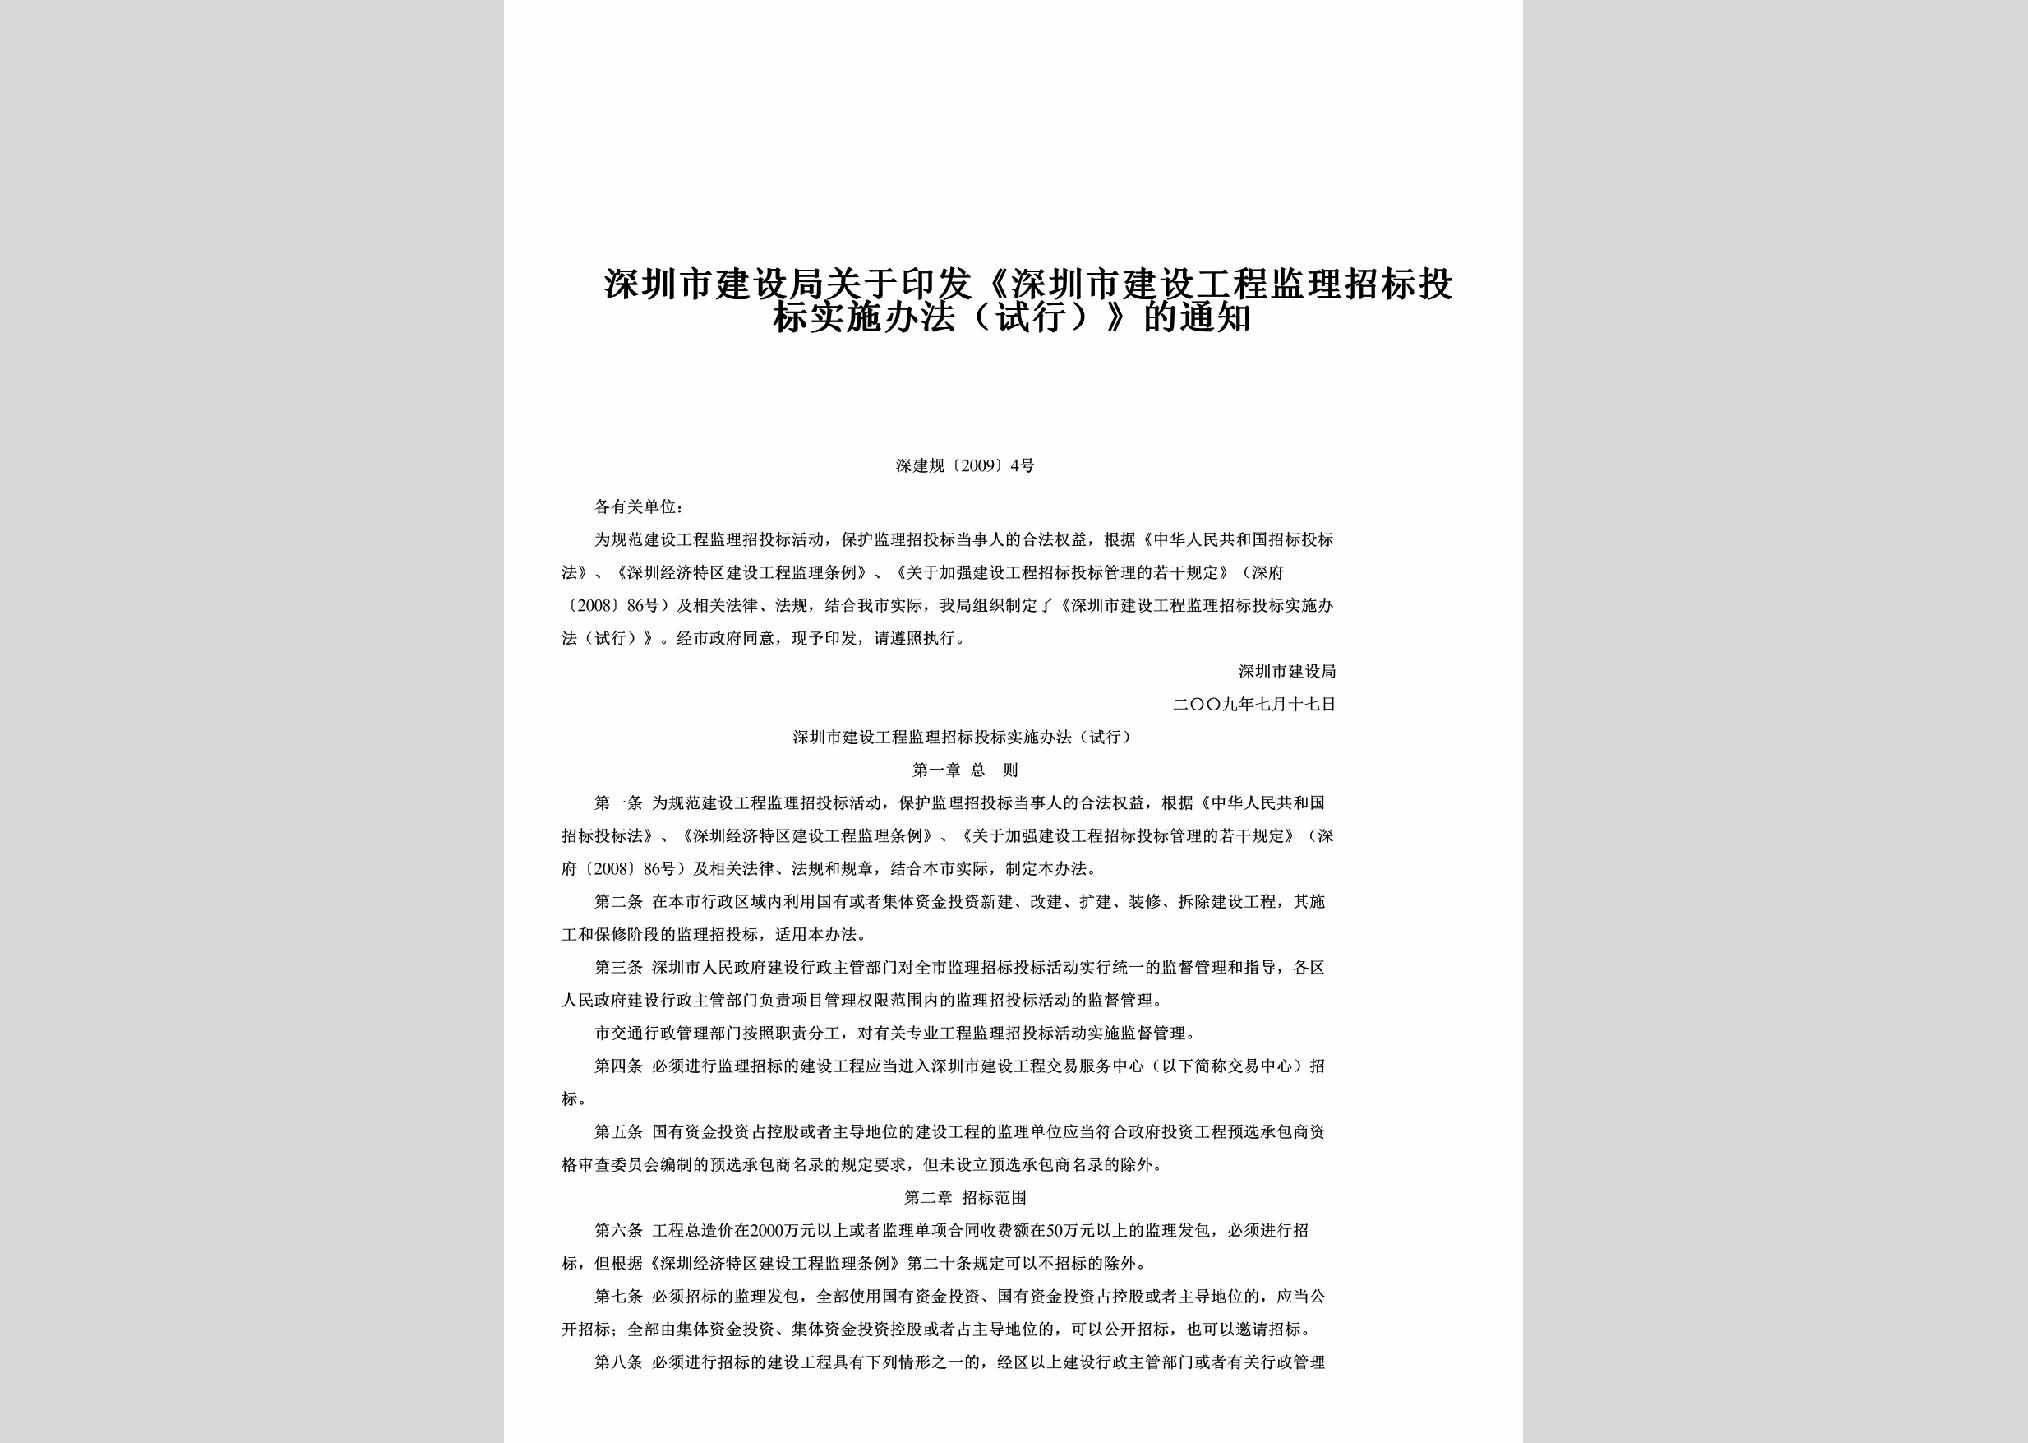 GDSJG-2009-4：关于印发《深圳市建设工程监理招标投标实施办法（试行）》的通知